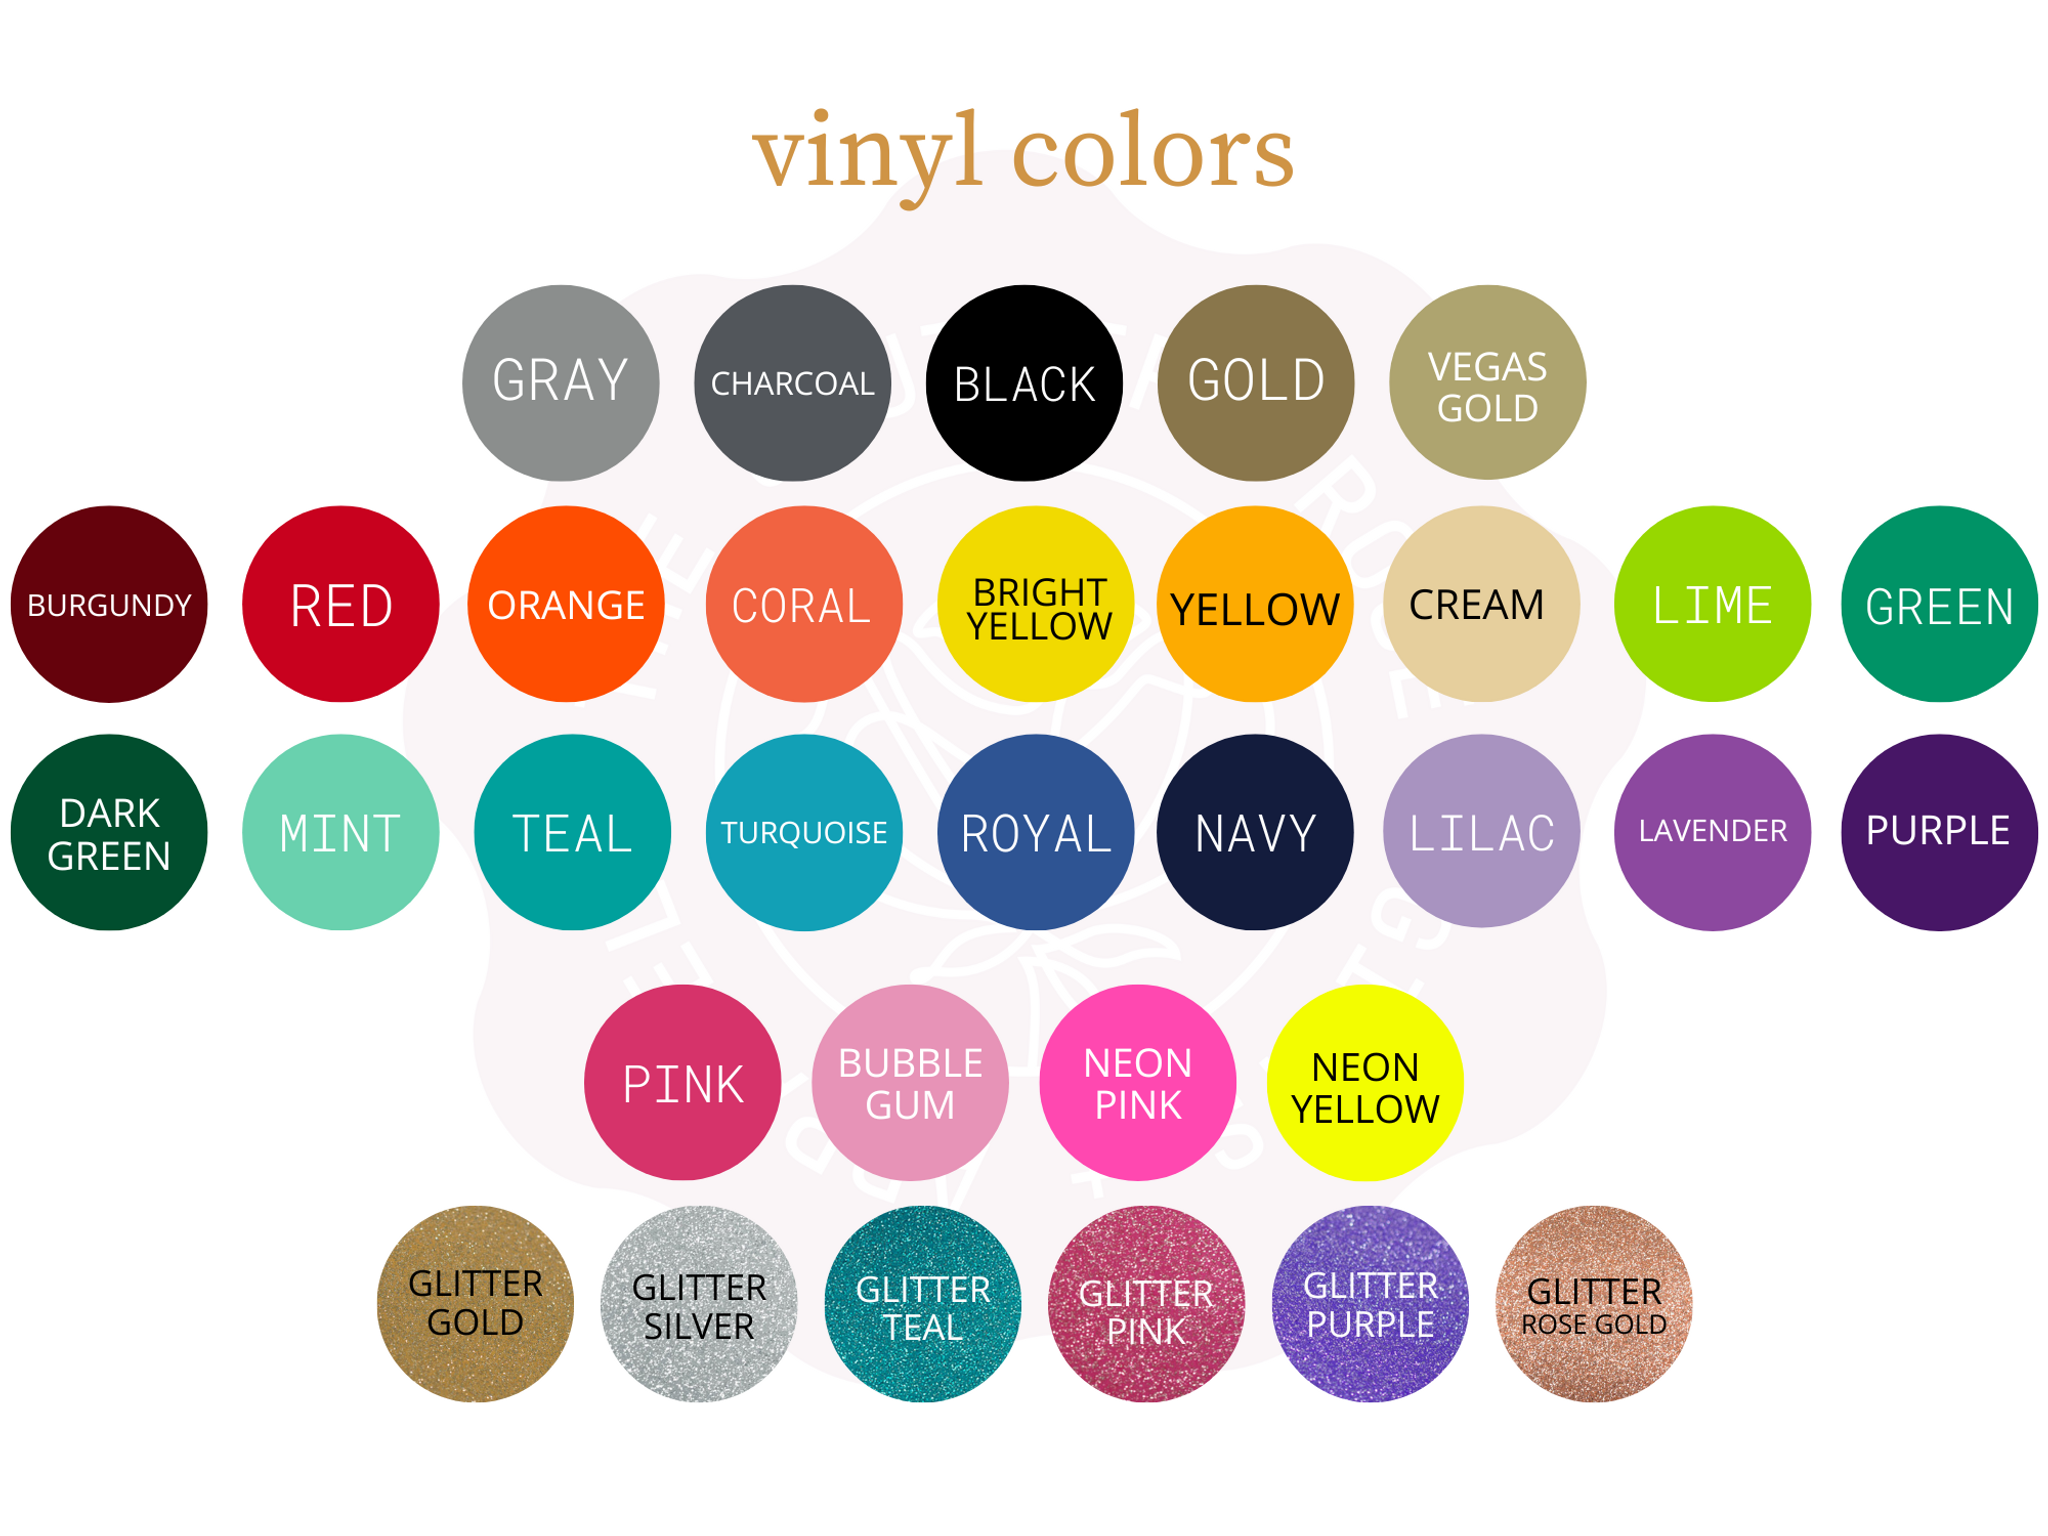 https://cdn11.bigcommerce.com/s-qiszfjgfwj/images/stencil/original/products/3161/14950/tsr2-vinyl-colors__21651__75923.1673382117.png?c=2